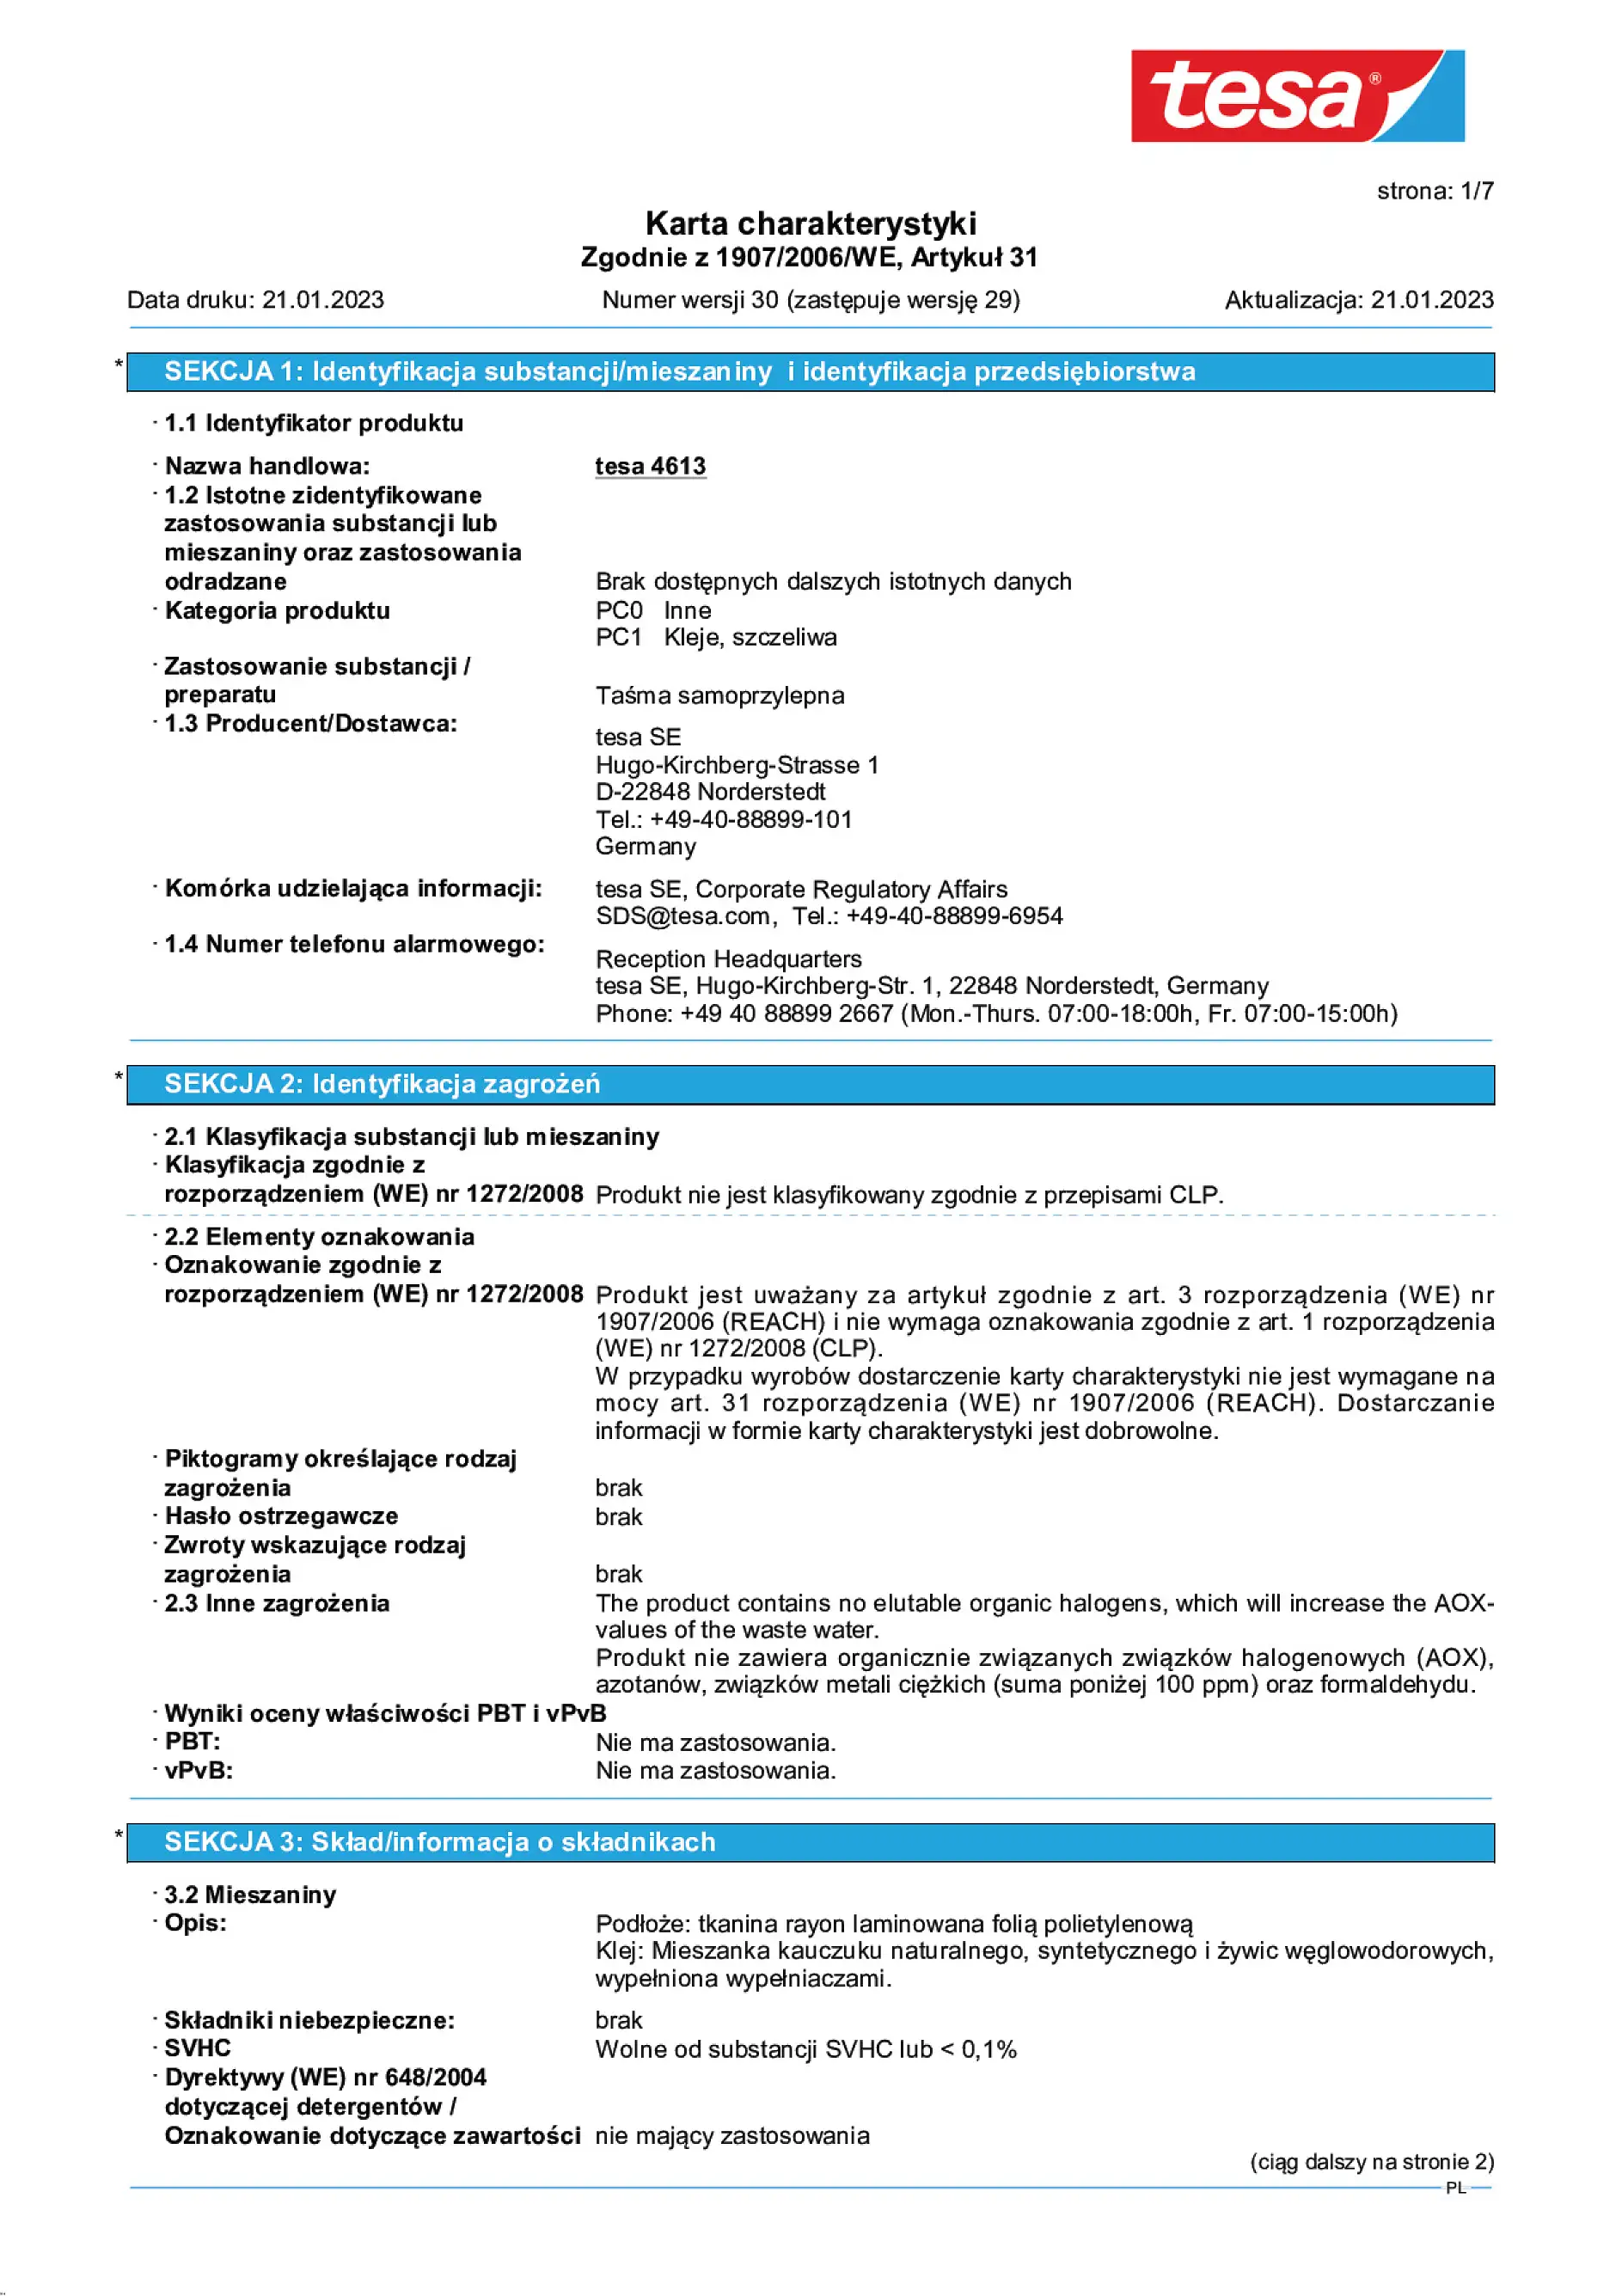 Safety data sheet_tesa® 04613_pl-PL_v30